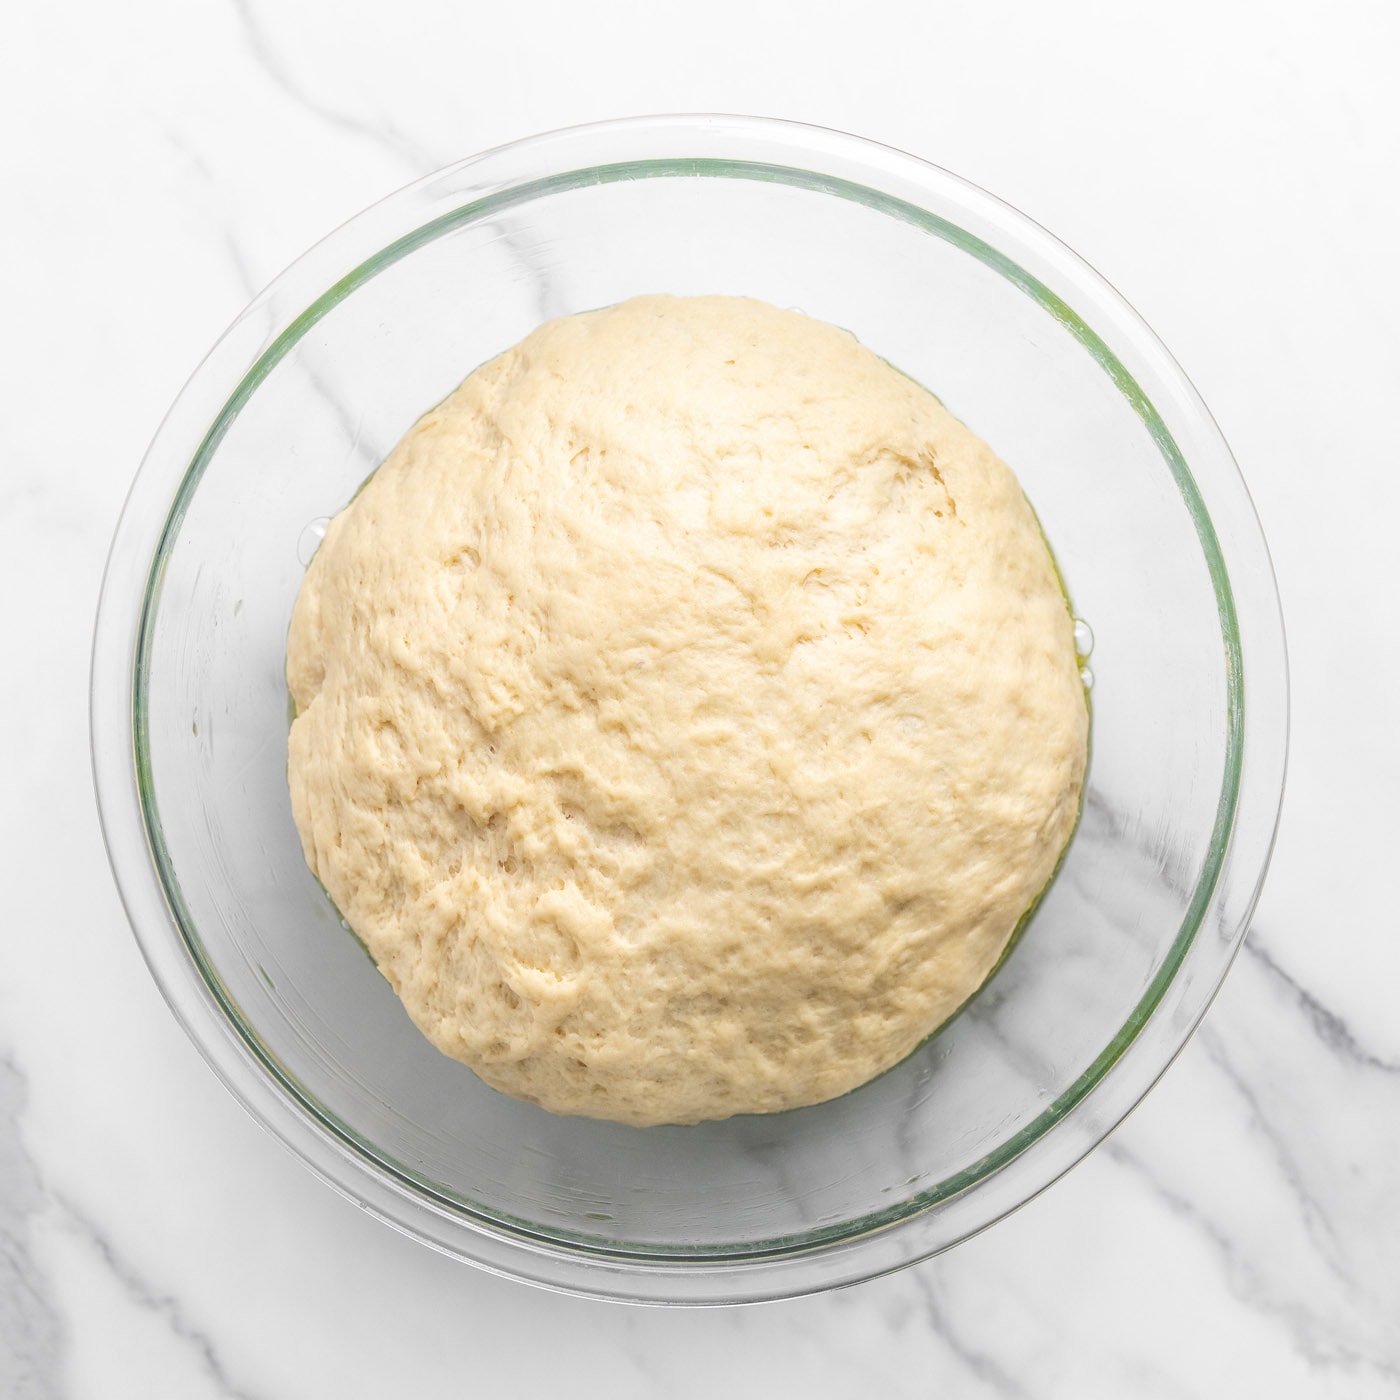 dough ball in a bowl